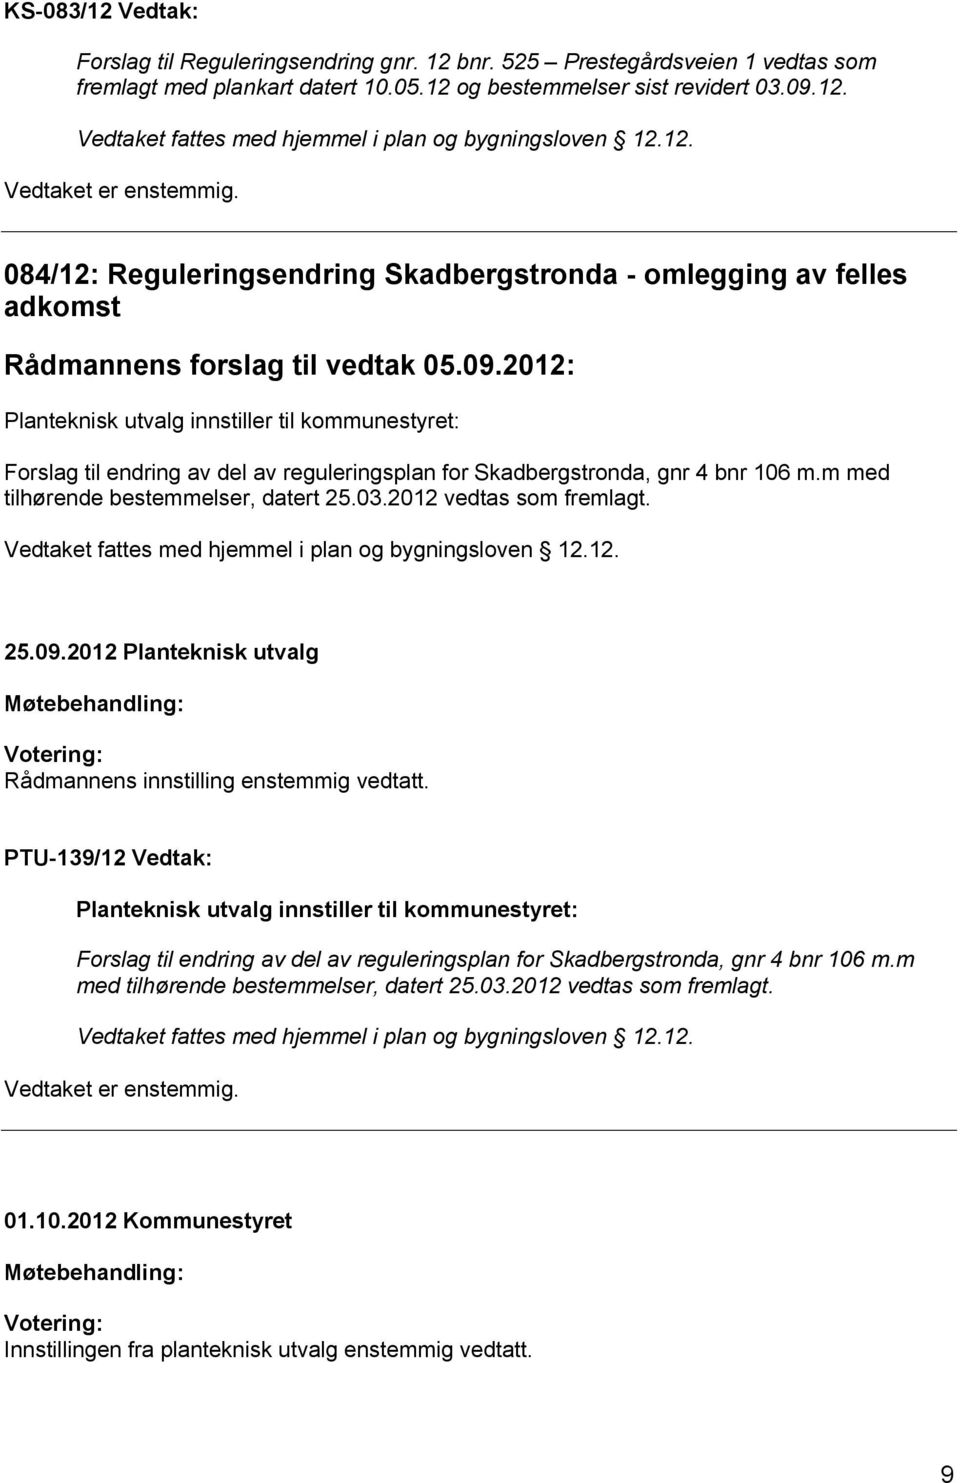 2012: Planteknisk utvalg innstiller til kommunestyret: Forslag til endring av del av reguleringsplan for Skadbergstronda, gnr 4 bnr 106 m.m med tilhørende bestemmelser, datert 25.03.